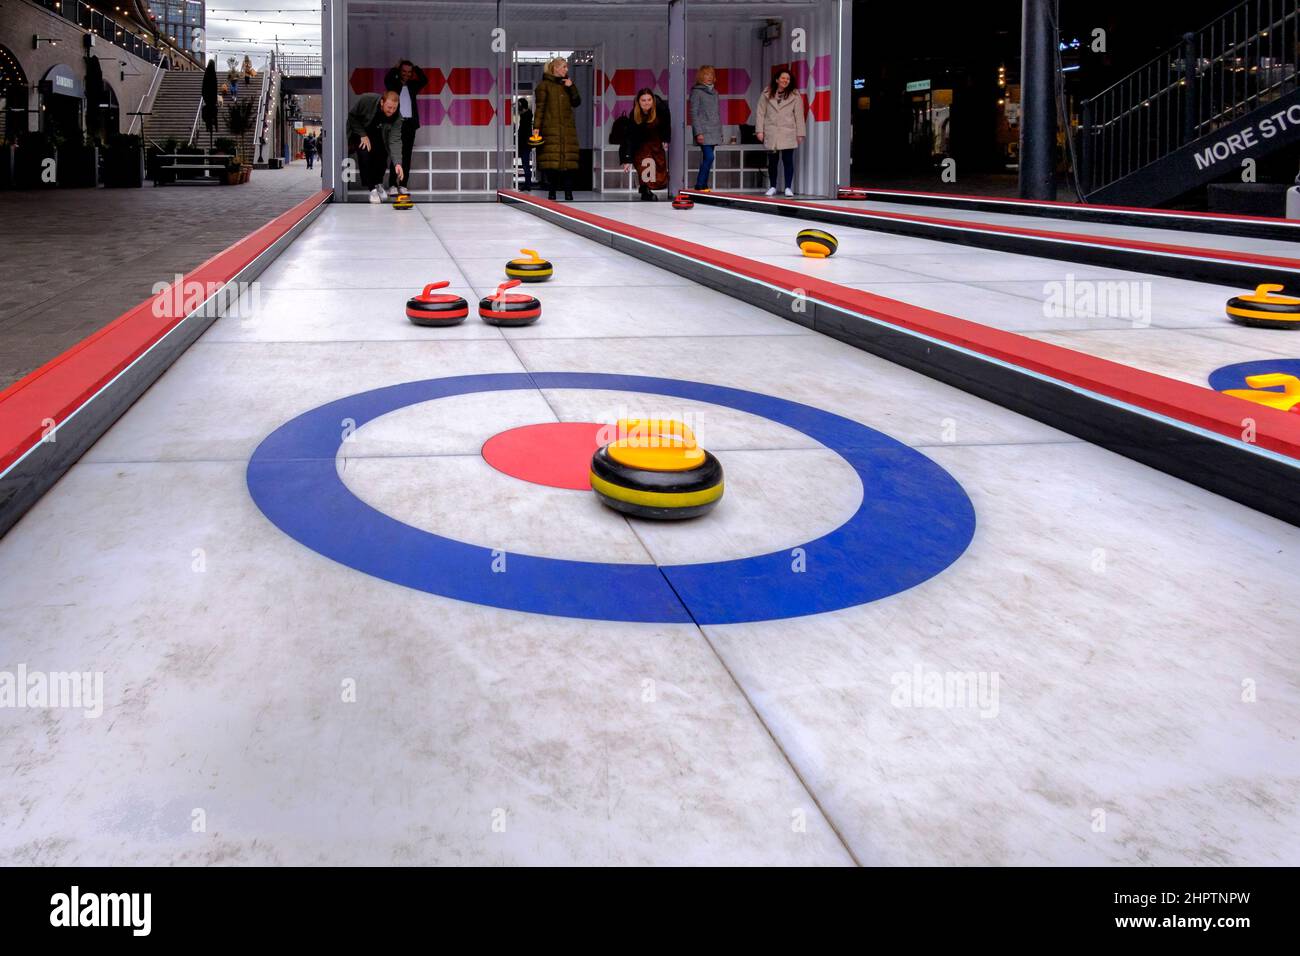 Nach dem Erfolg des Teams GB beim Curling-Event bei den Olympischen Winterspielen 2022 testen die Besucher eine künstliche Eisversion des Sports, London, Großbritannien. Stockfoto